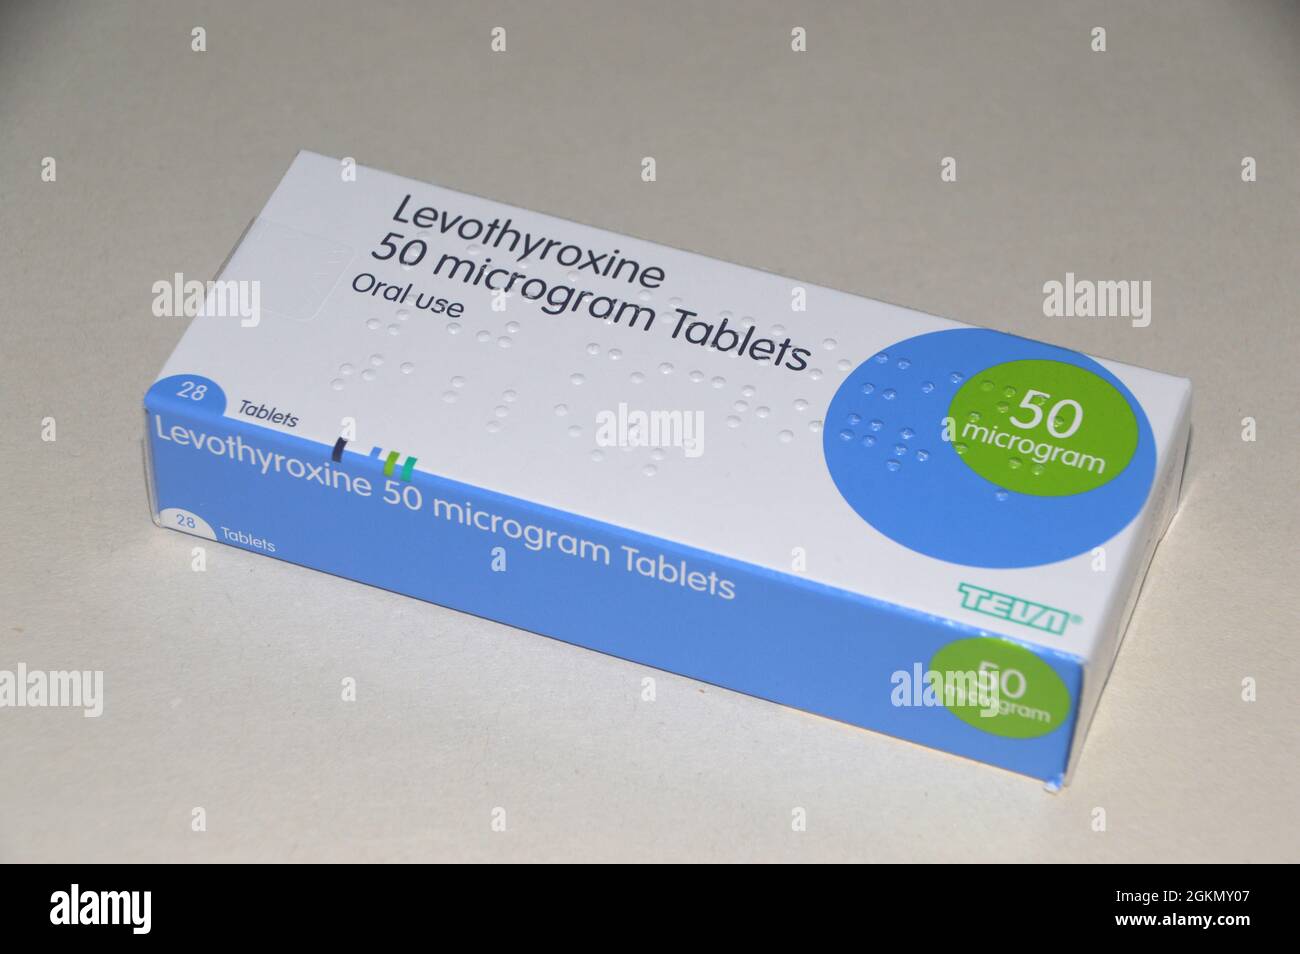 Eine Schachtel mit 28 50 mg Levothyroxin (L-Thyroxin) Tabletten von Teva,  die zur Behandlung der unteraktiven Schilddrüse (Hypothyreose) verschrieben  werden England, Großbritannien Stockfotografie - Alamy